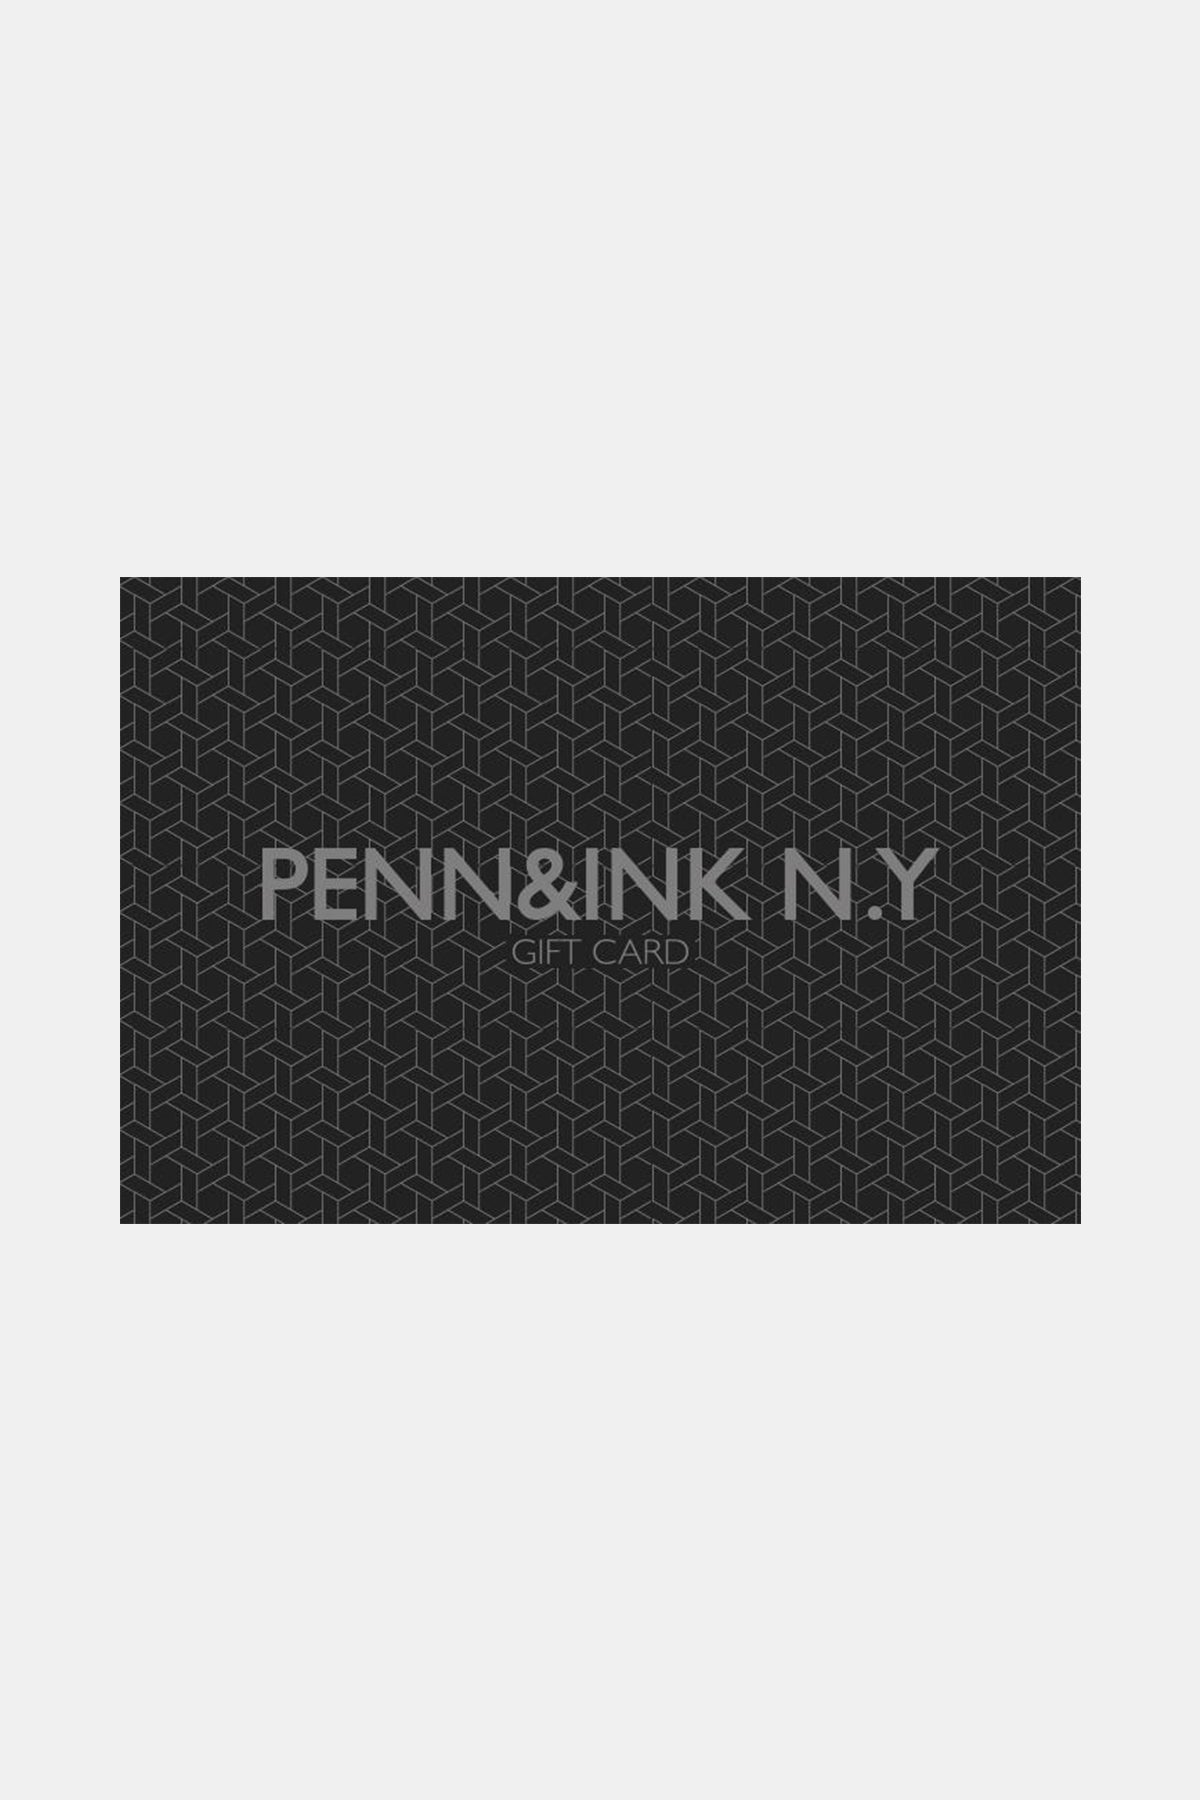 PENN&INK N.Y GIFT CARD